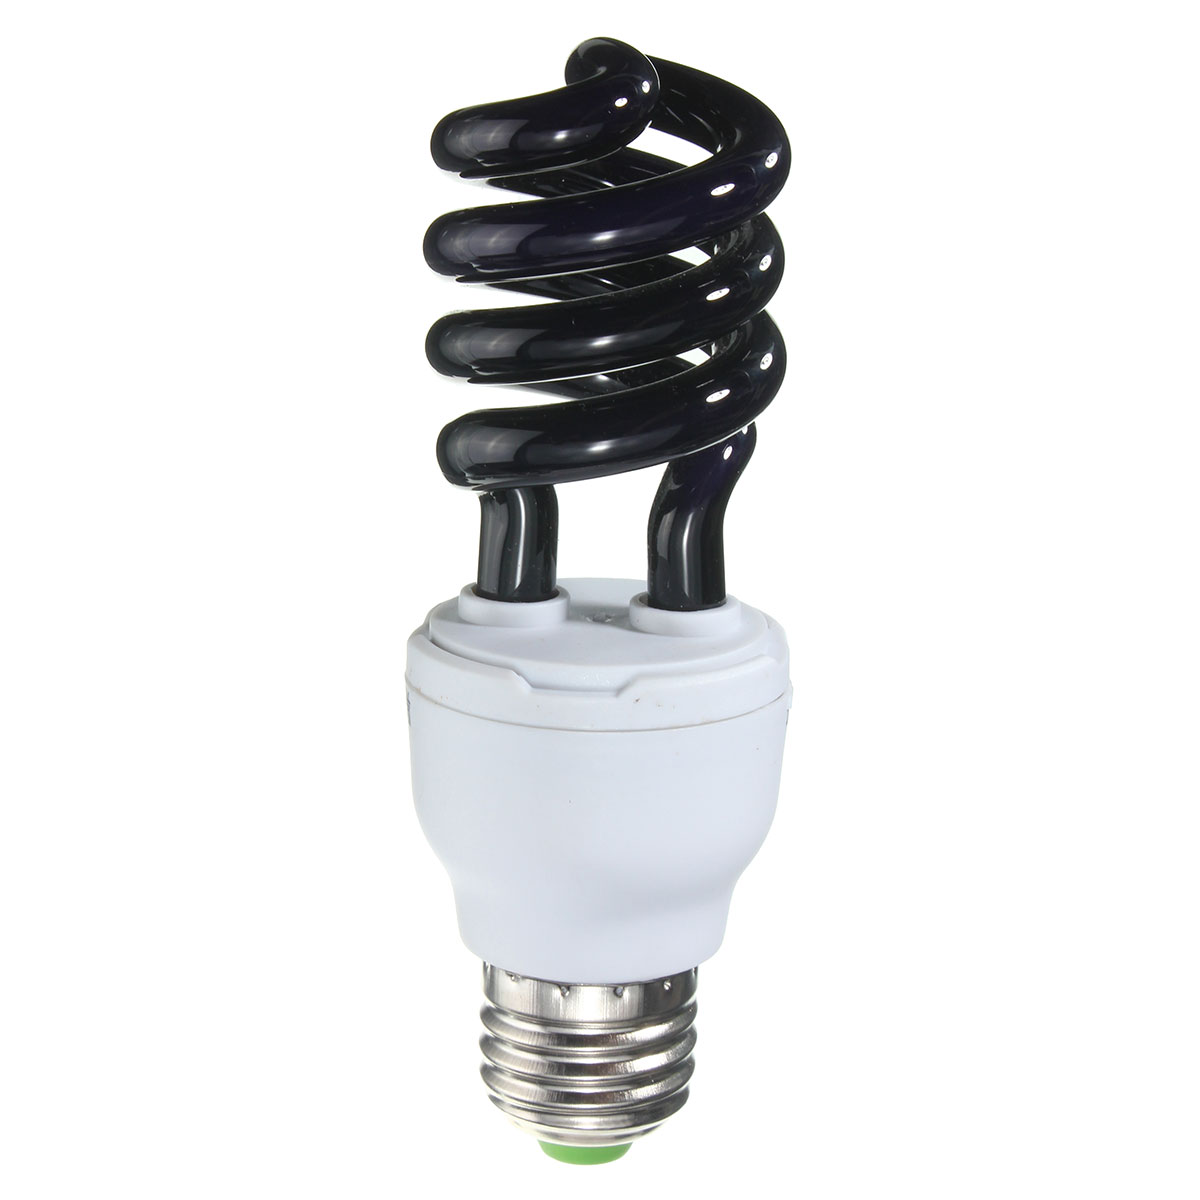 UV-Ultraviolet-Spiral-Low-Energy-Saving-CFL-Light-Bulb-E27-Screw-Black-Light-Bulb-220V-1124258